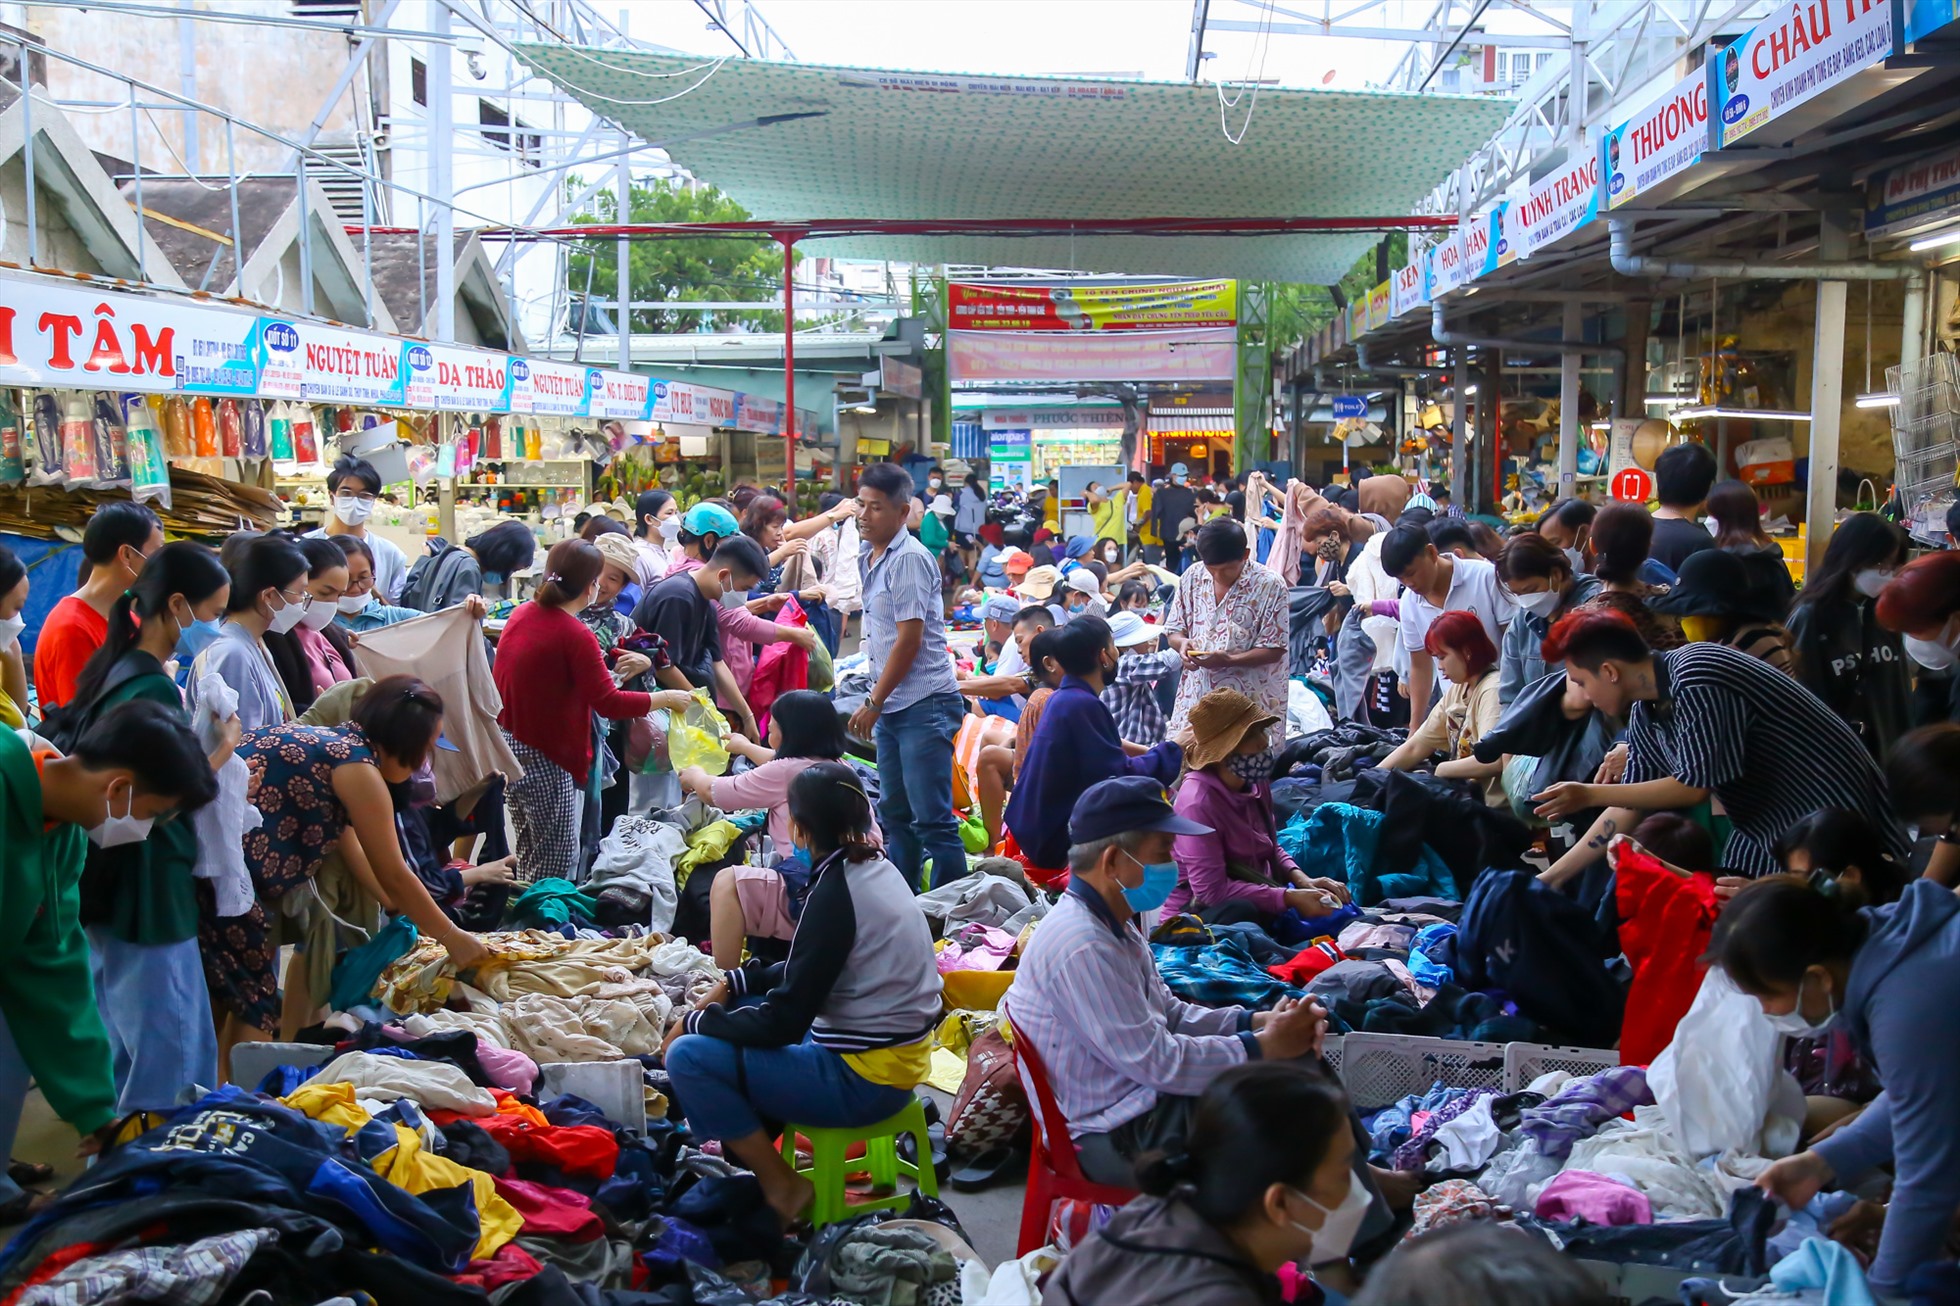 Phiên chợ đồ bành diễn ra vào 16h-19h hàng ngày tại khu vực cổng chợ Cồn (đường Ông Ích Khiêm, quận Hải Châu). Nơi đây bày bán nhiều sản phẩm đồ cũ, tồn kho hoặc đã qua sử dụng cho người mua thoải mái lựa chọn.